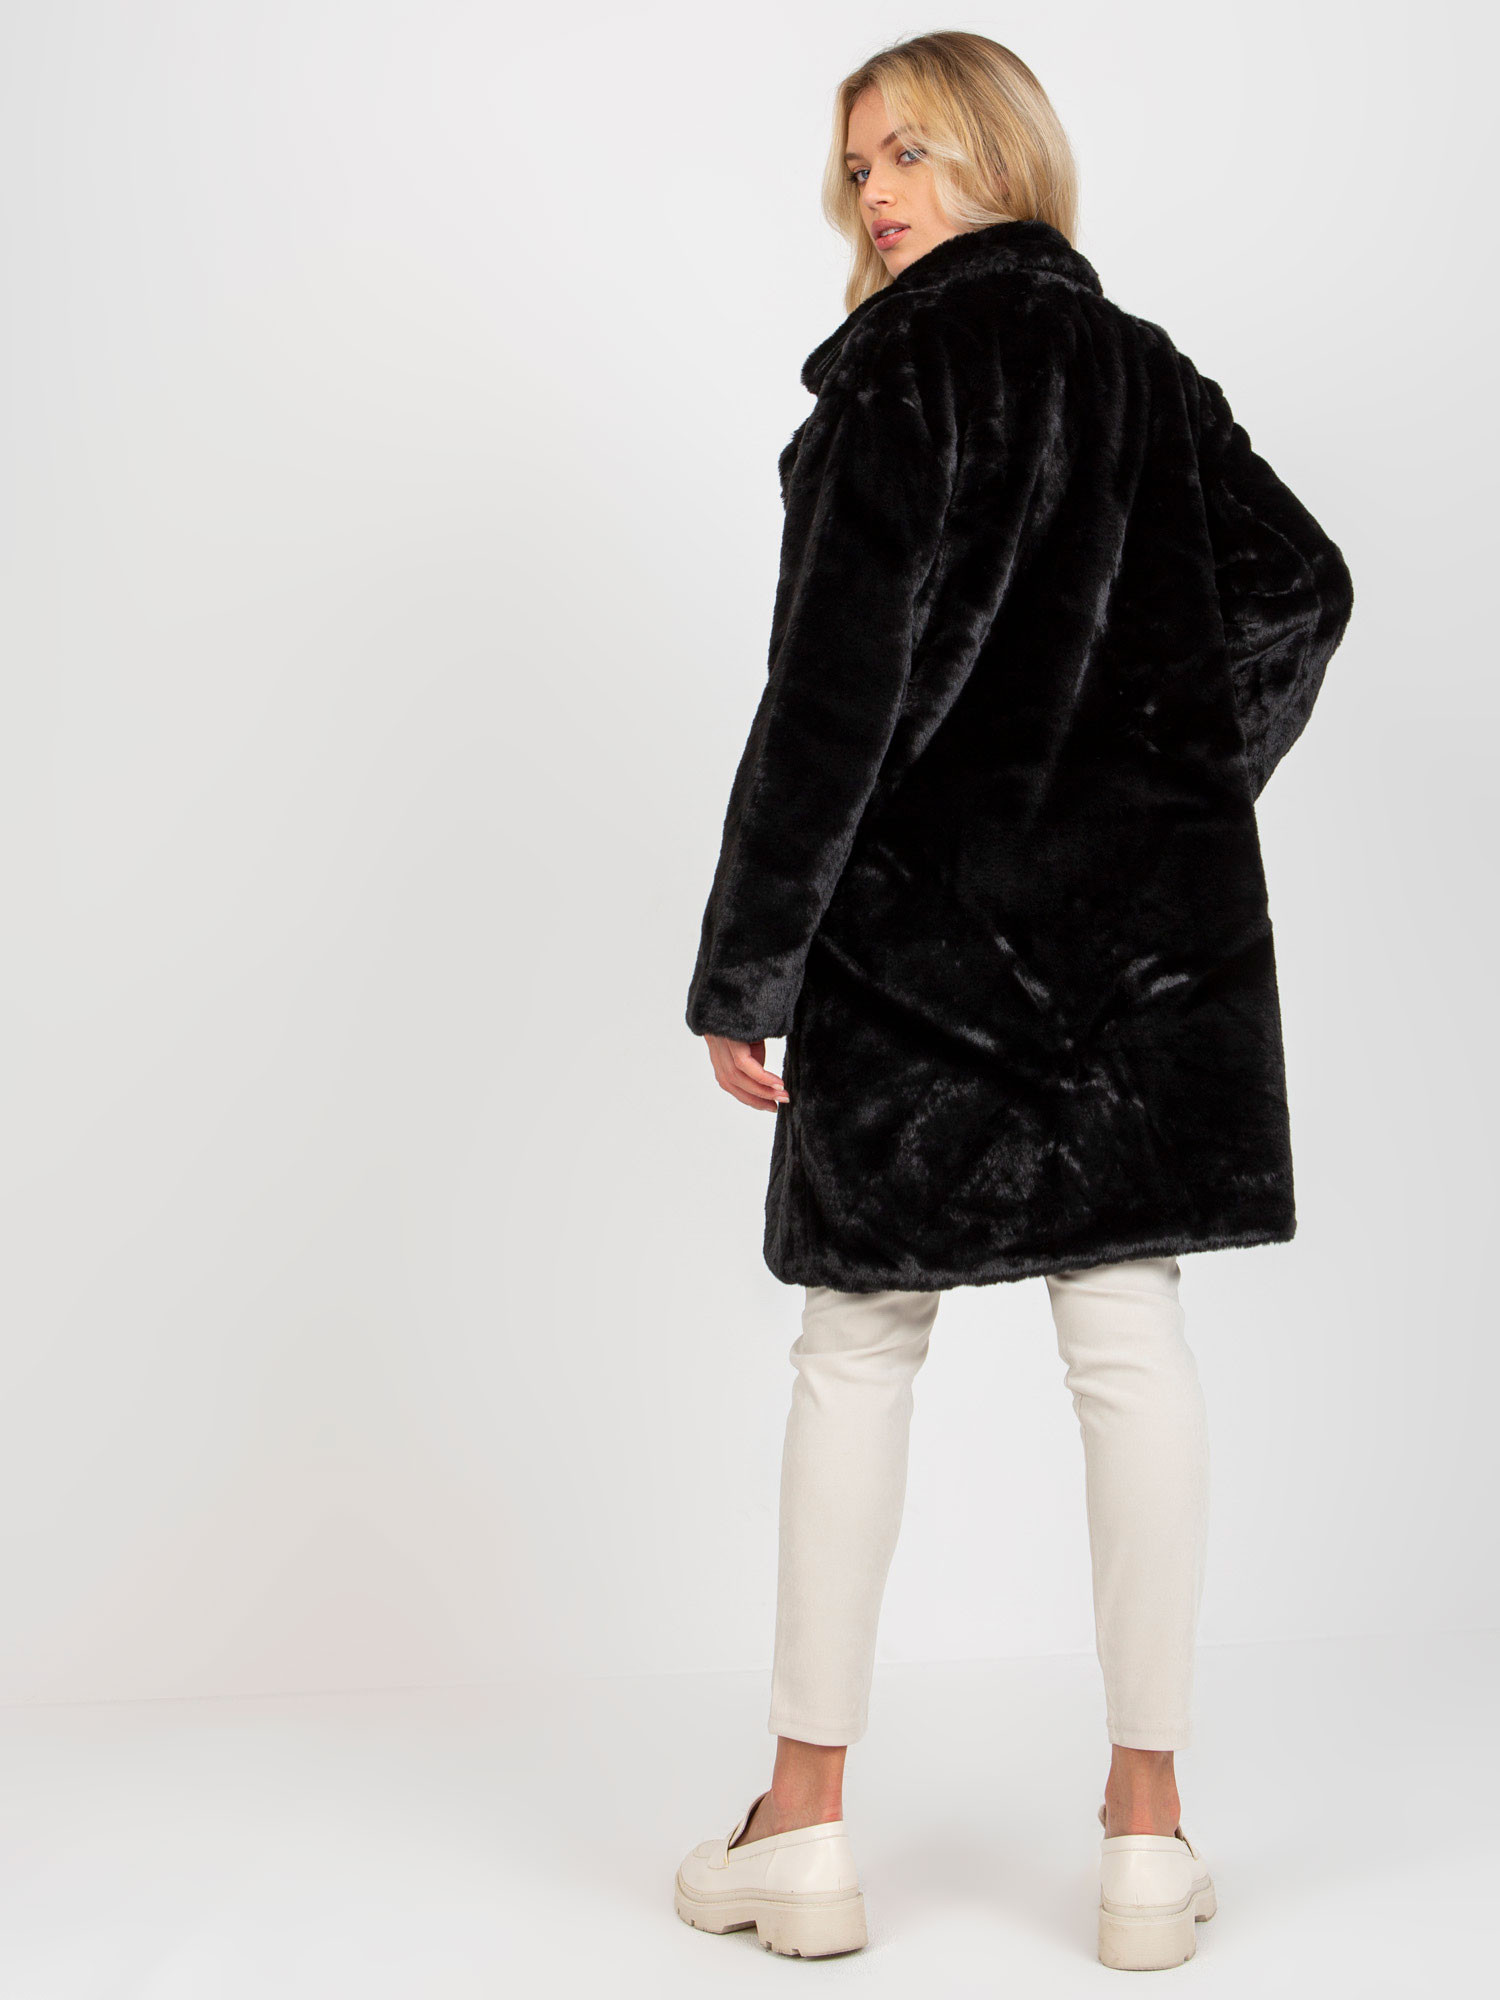 Dámský kabát TW EN 2118.95P černý jedna velikost